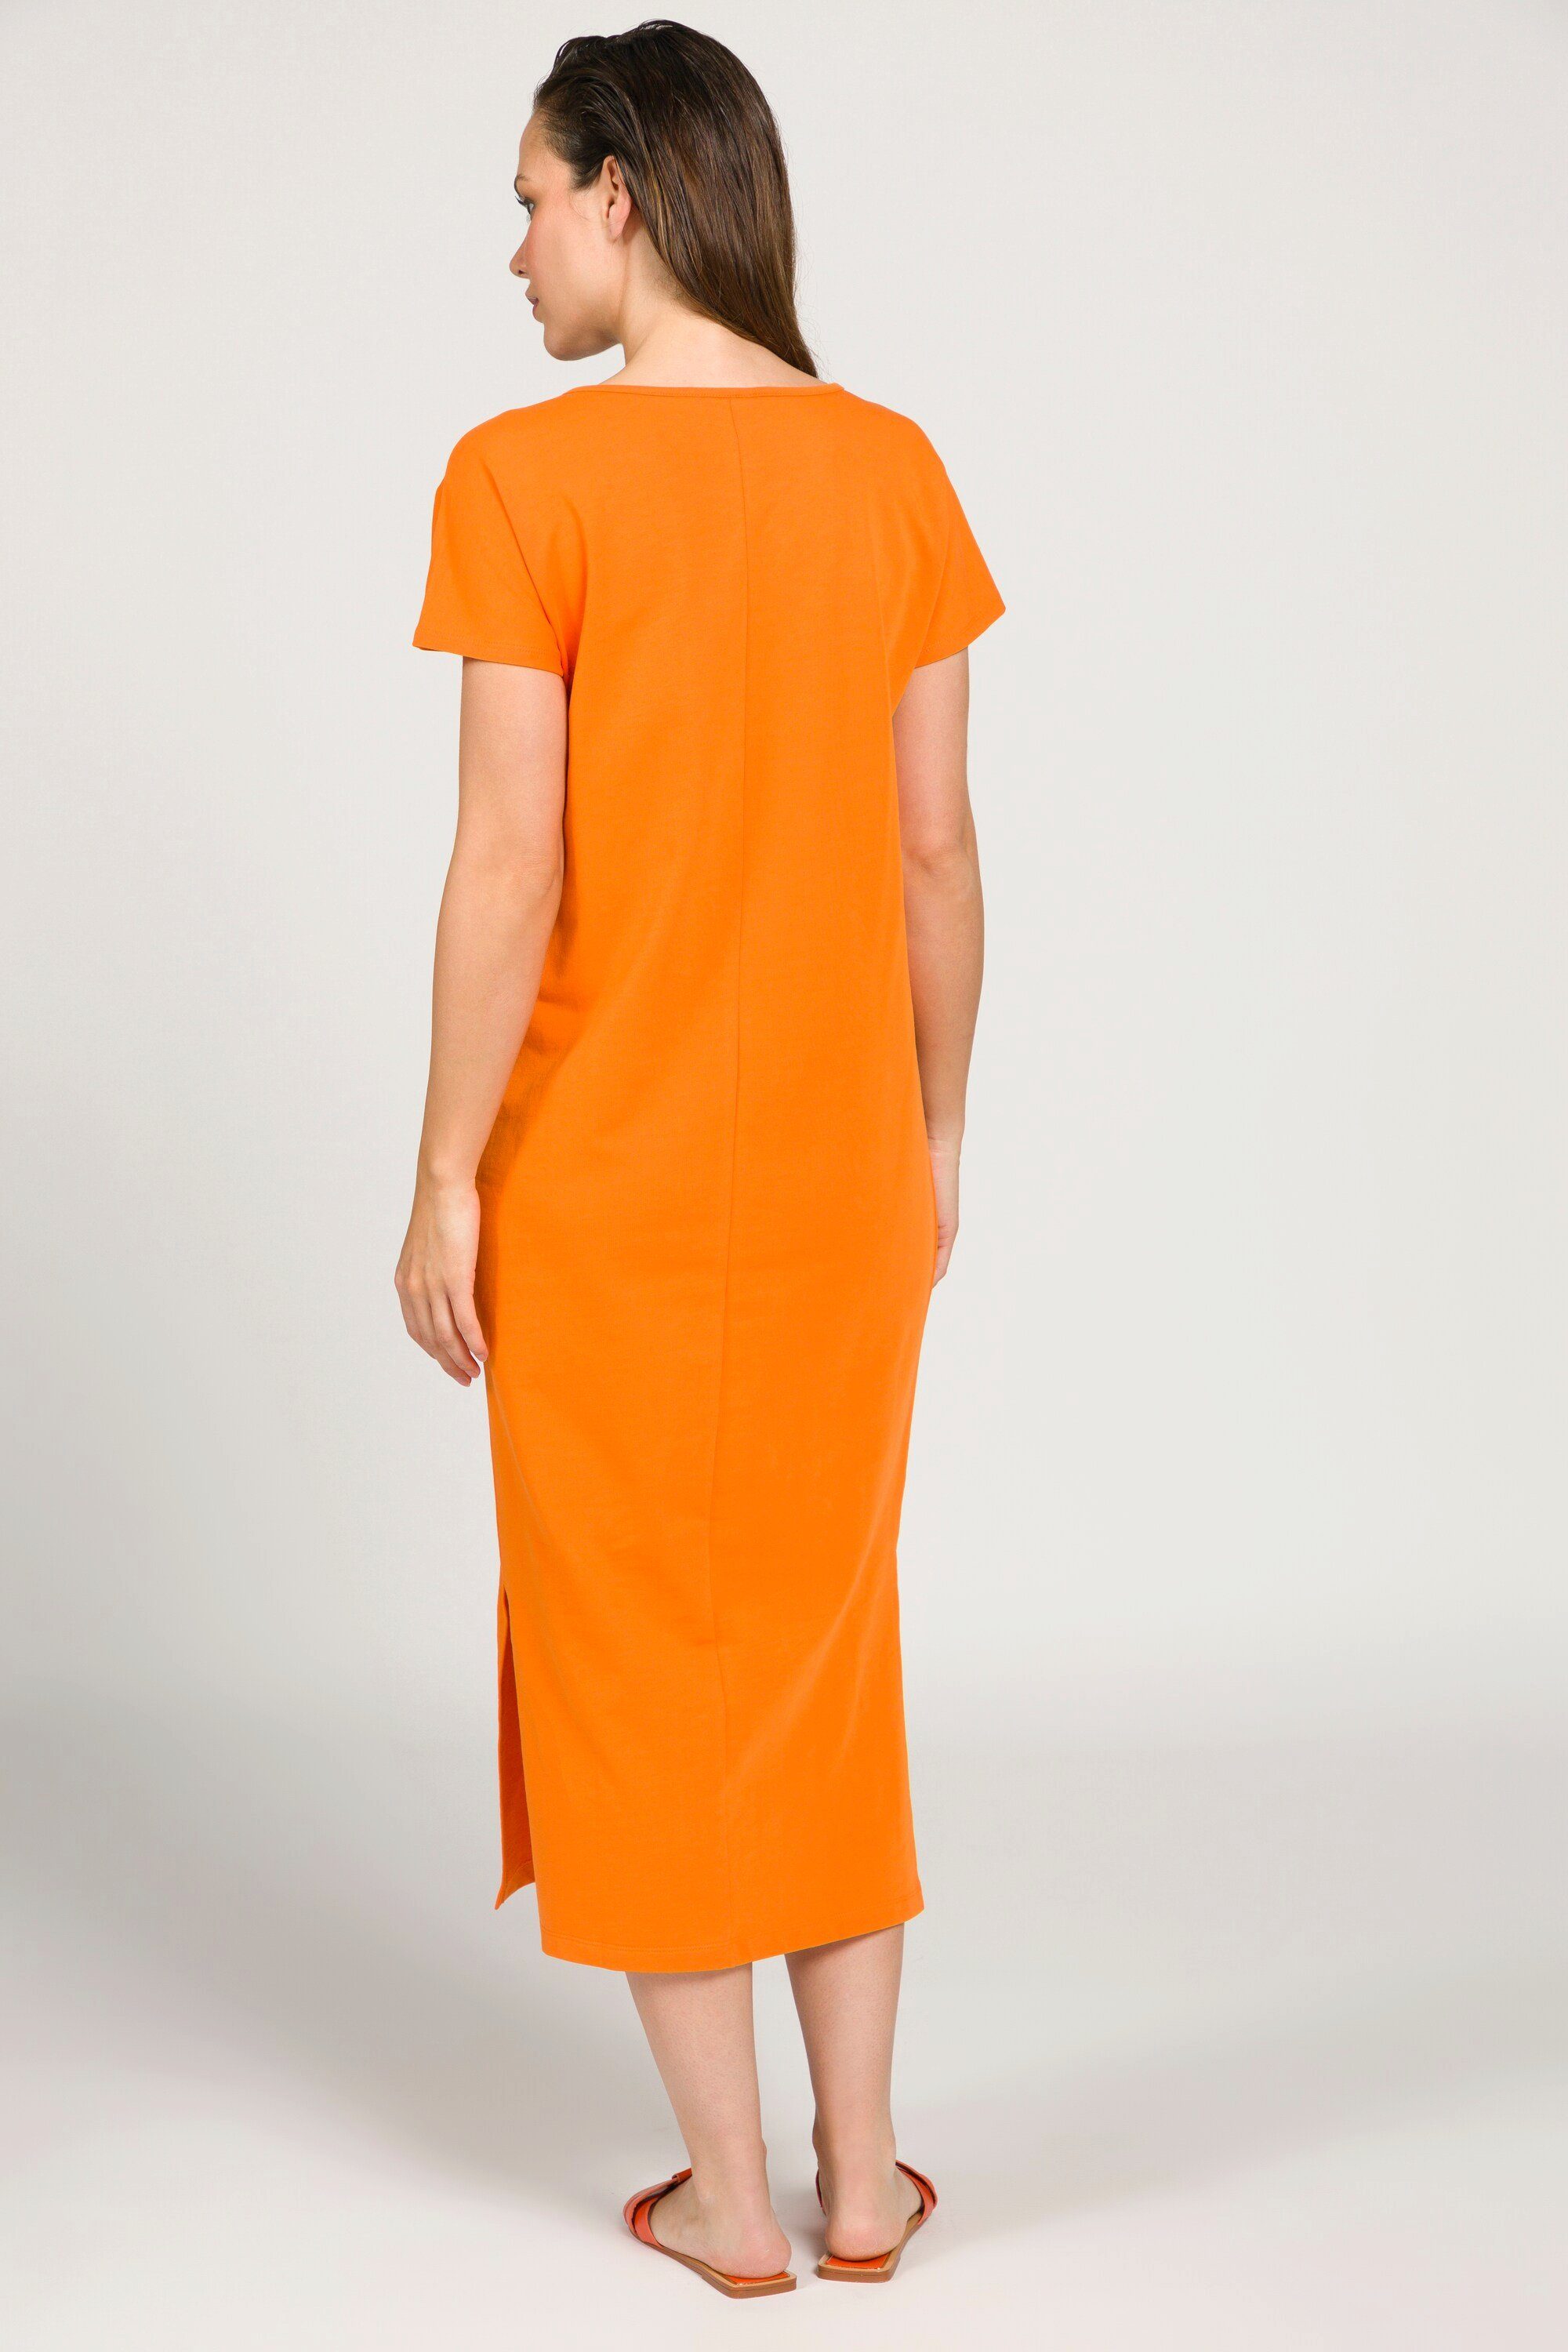 Gina Laura Jerseykleid Kleid Jersey ärmellos Seitenschlitze orange Rundhals